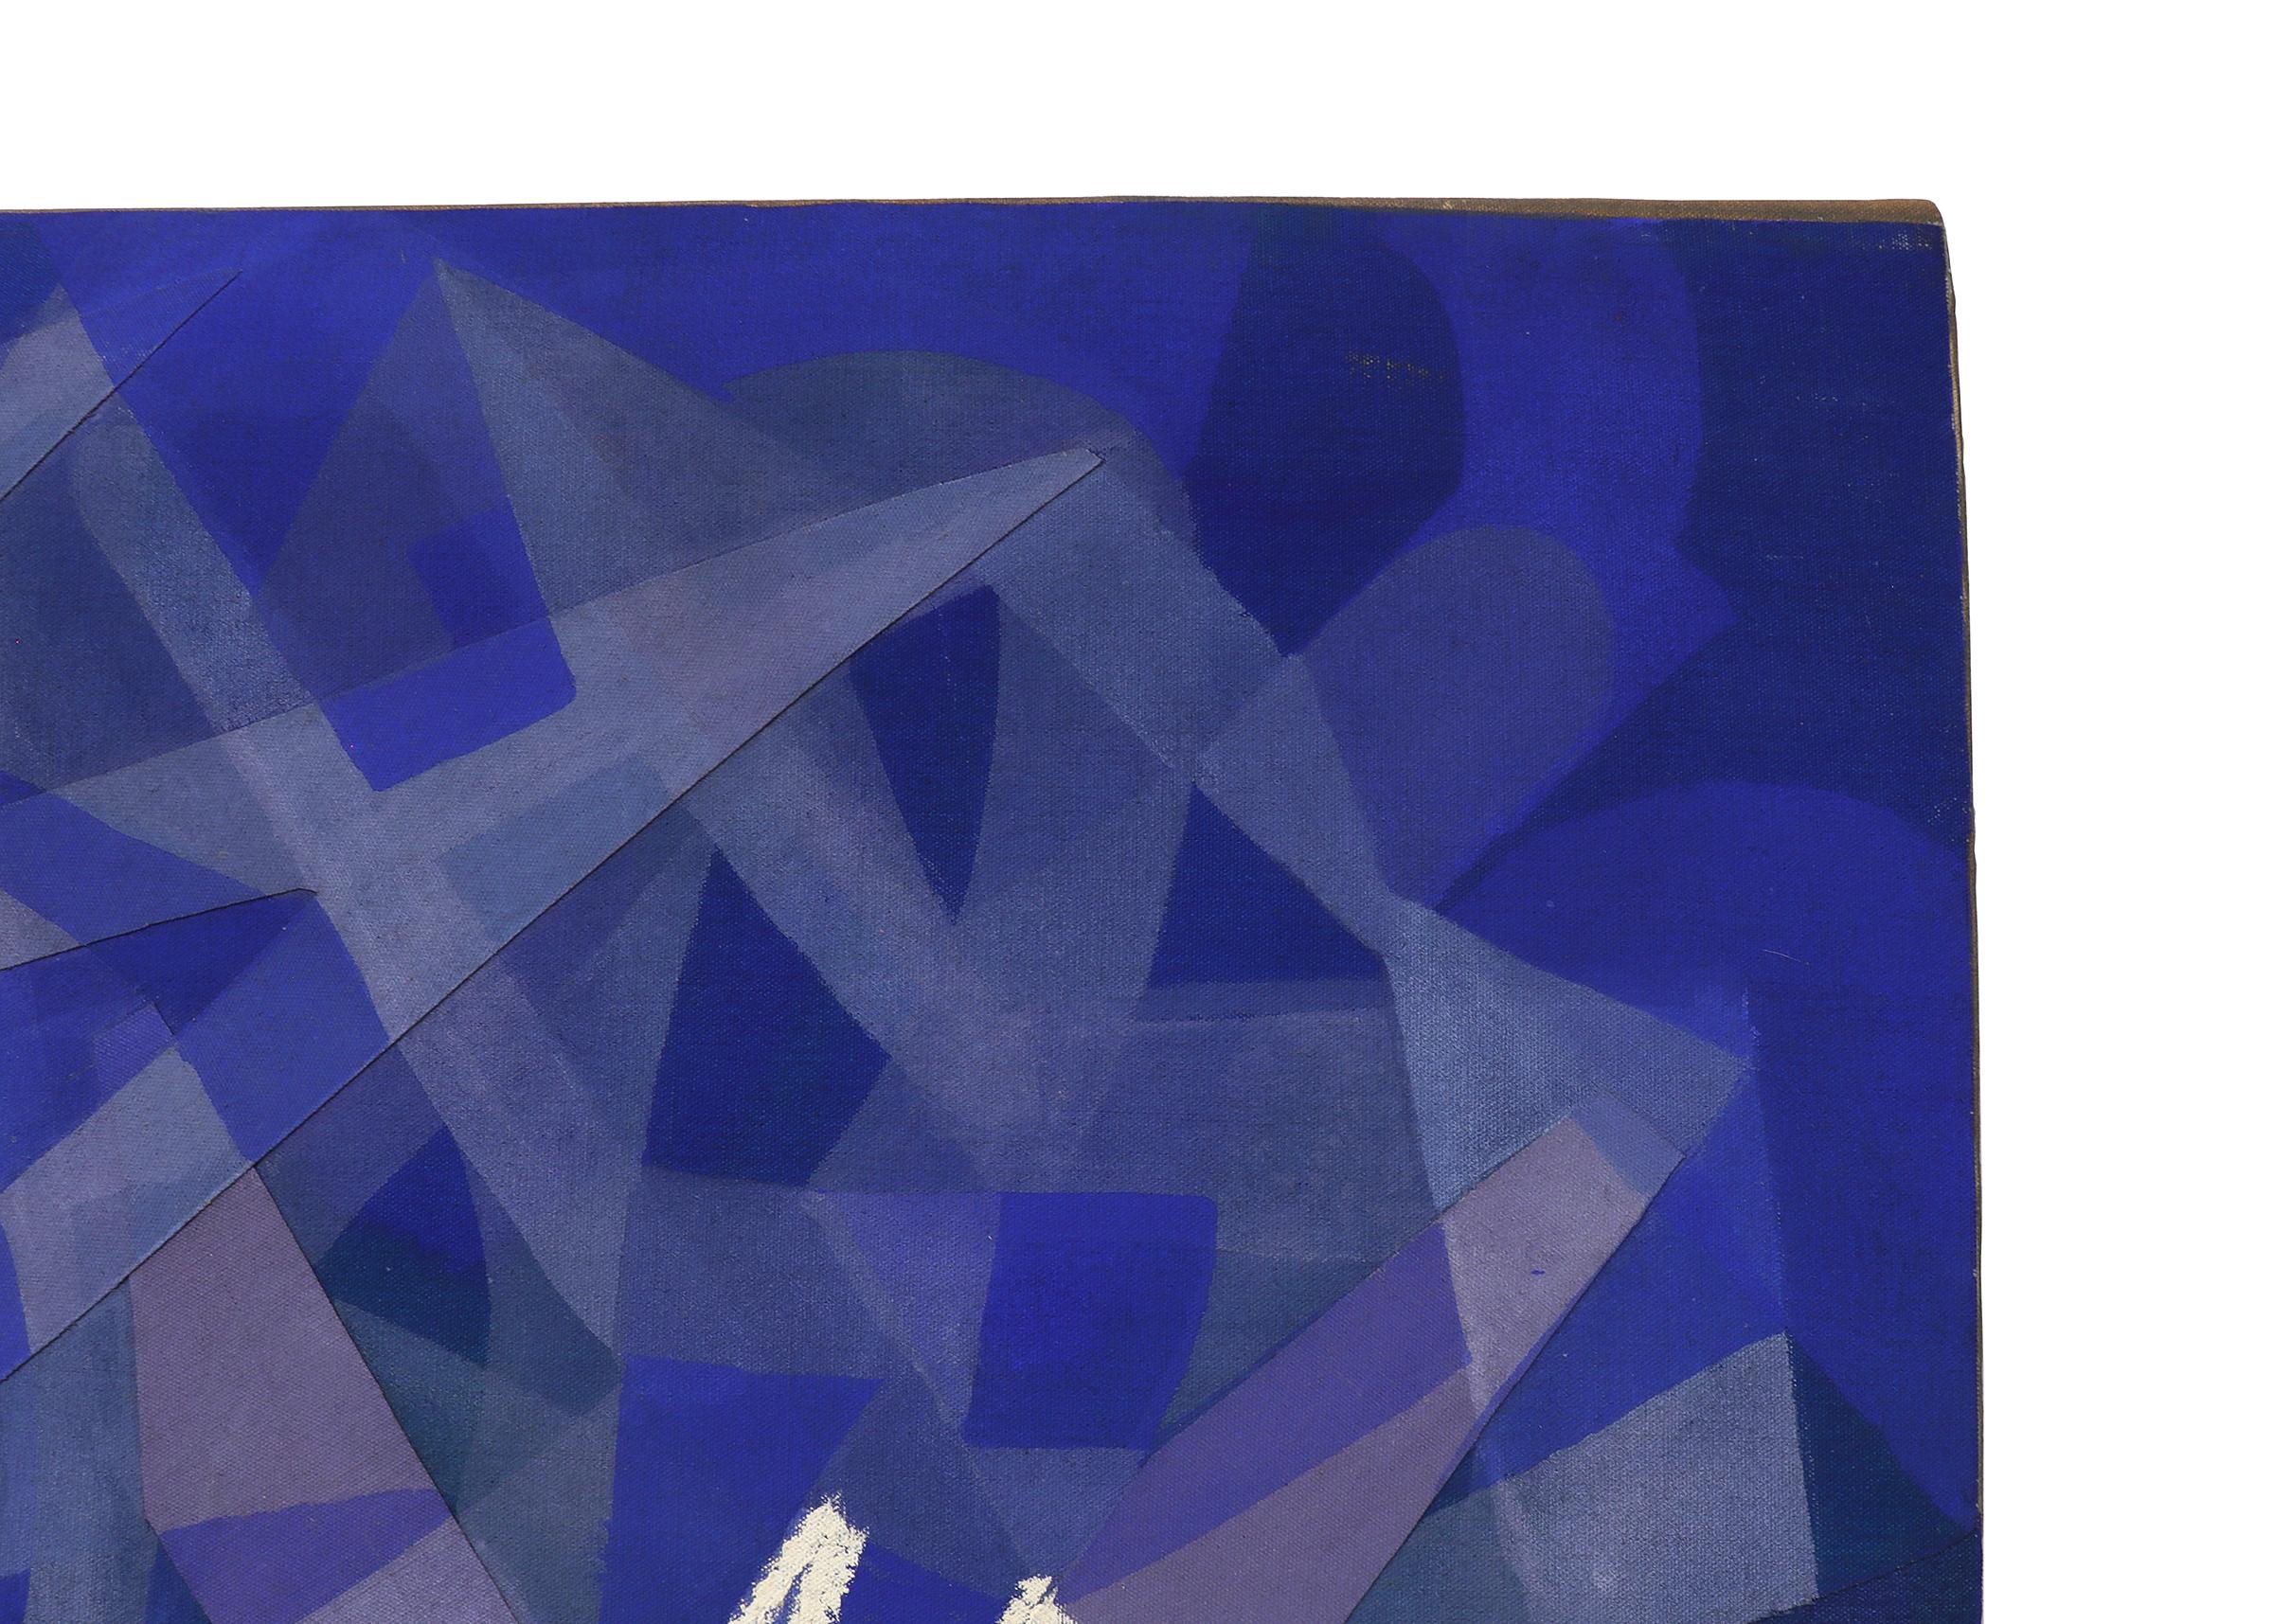 Peinture sur toile abstraite moderniste américaine représentant la neige des mers, bleu, blanc et gris - Abstrait Painting par Hoff, Margo